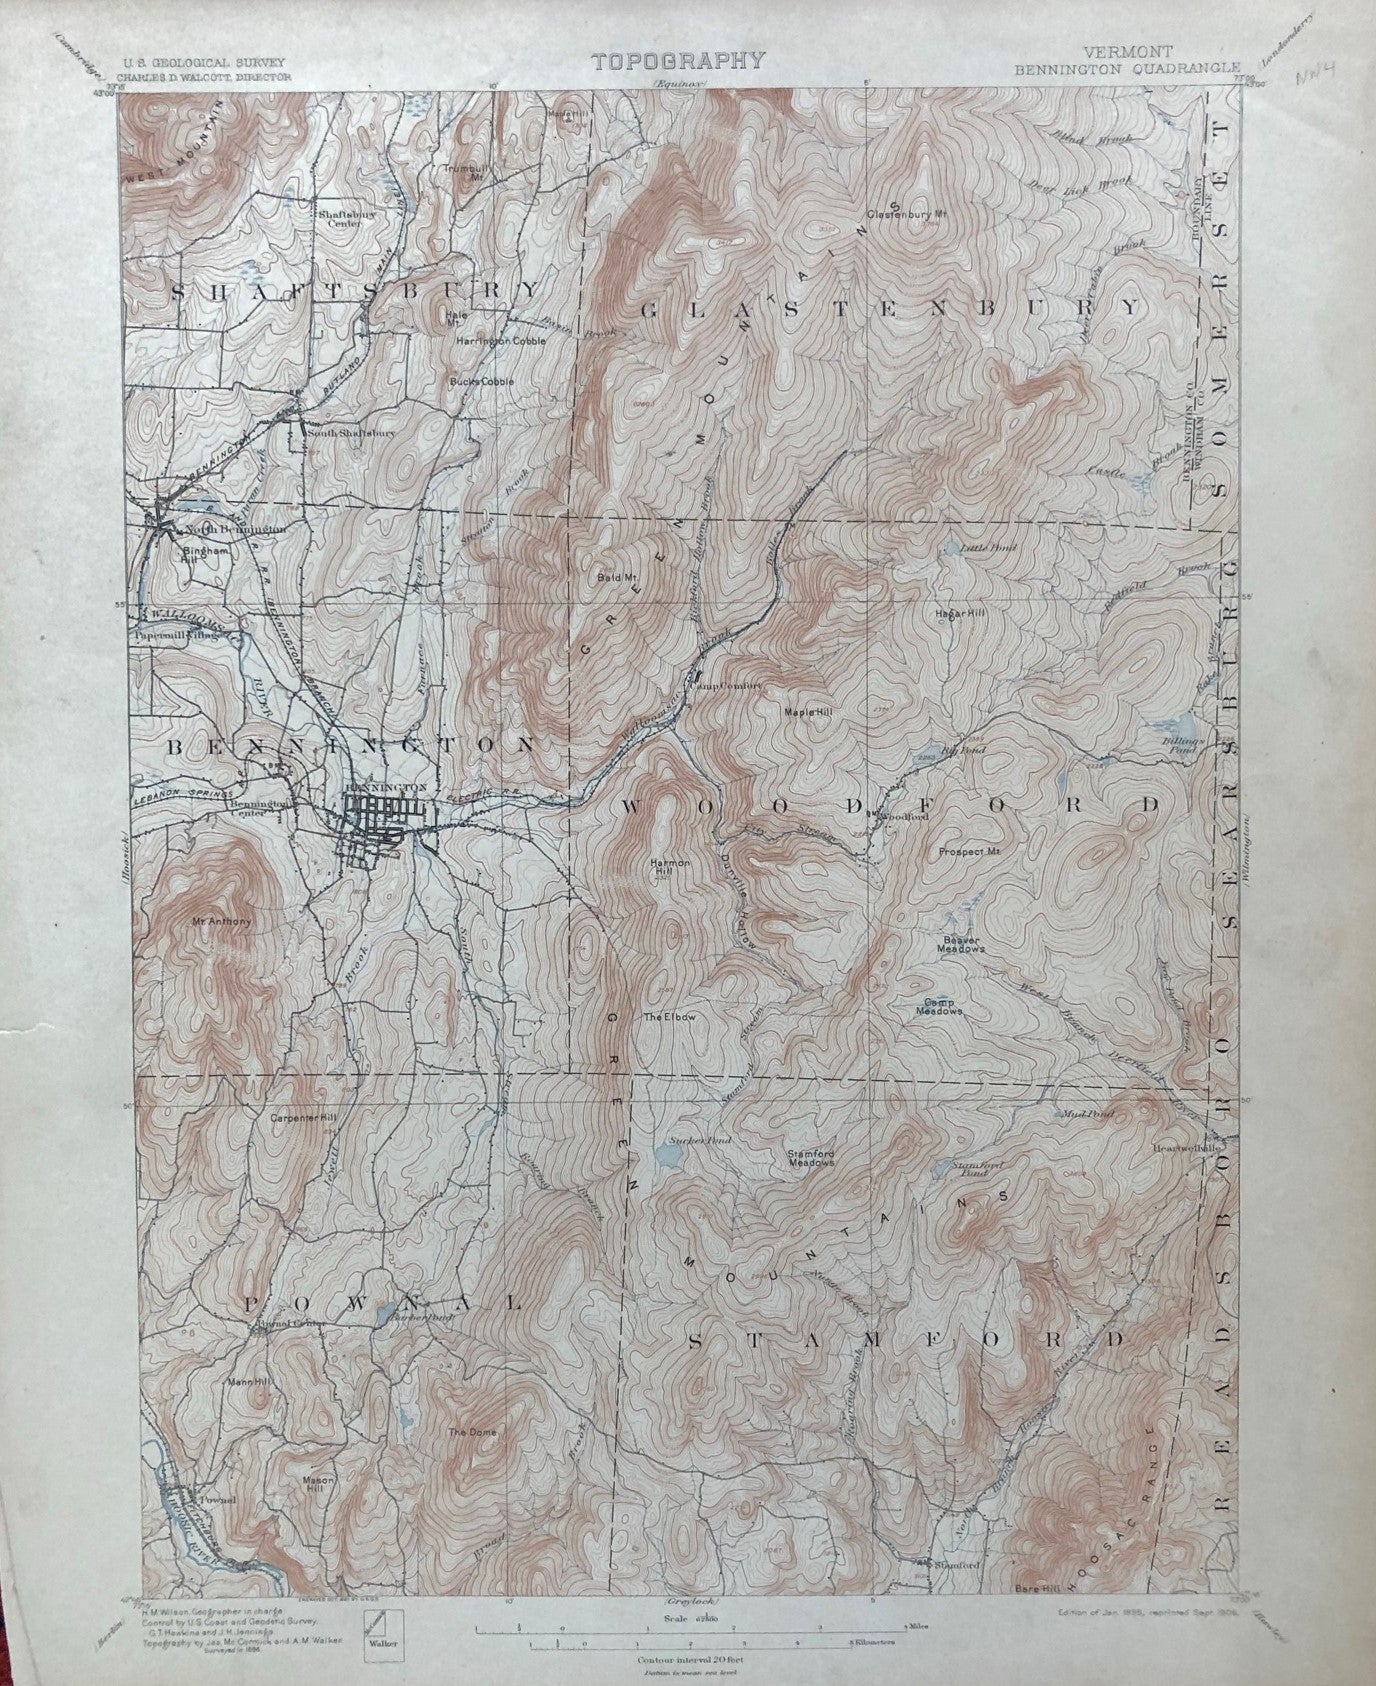 Genuine-Antique-Topographic-map-Bennington-Vermont-Quadrangle-VT-Antique-Topo-Map-Antique-Geological-&-Topographical-Maps-Vermont-1906-USGS-Maps-Of-Antiquity-1800s-19th-century